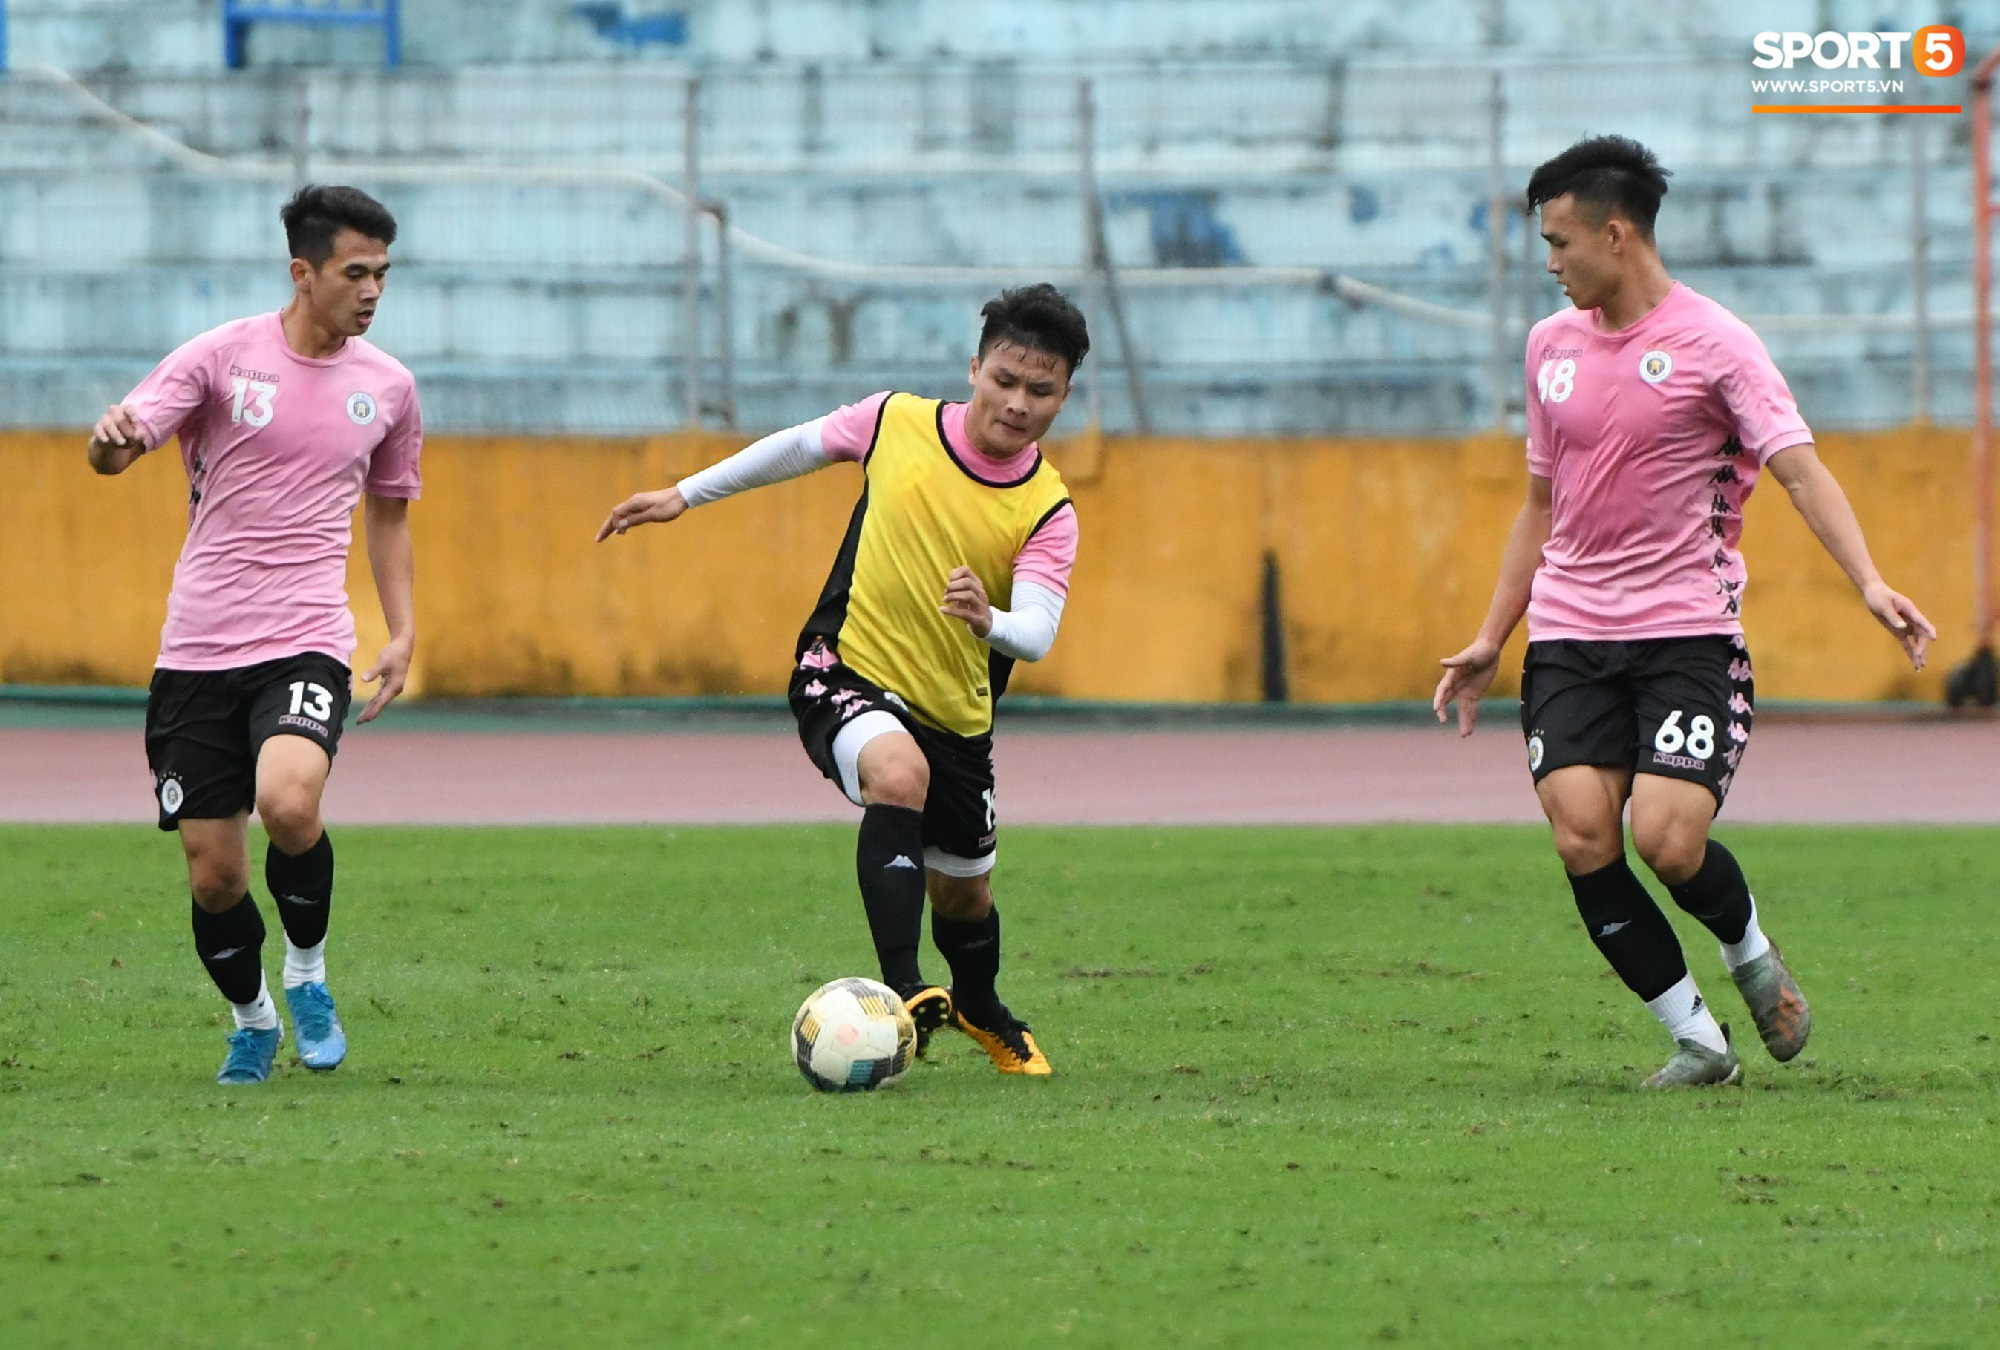 Đình Trọng đi tái khám, chắc chắn không thi đấu trận khai màn V.League 2020: CLB Hà Nội đặt niềm tin vào bộ đôi tuyển thủ U23 - Ảnh 1.